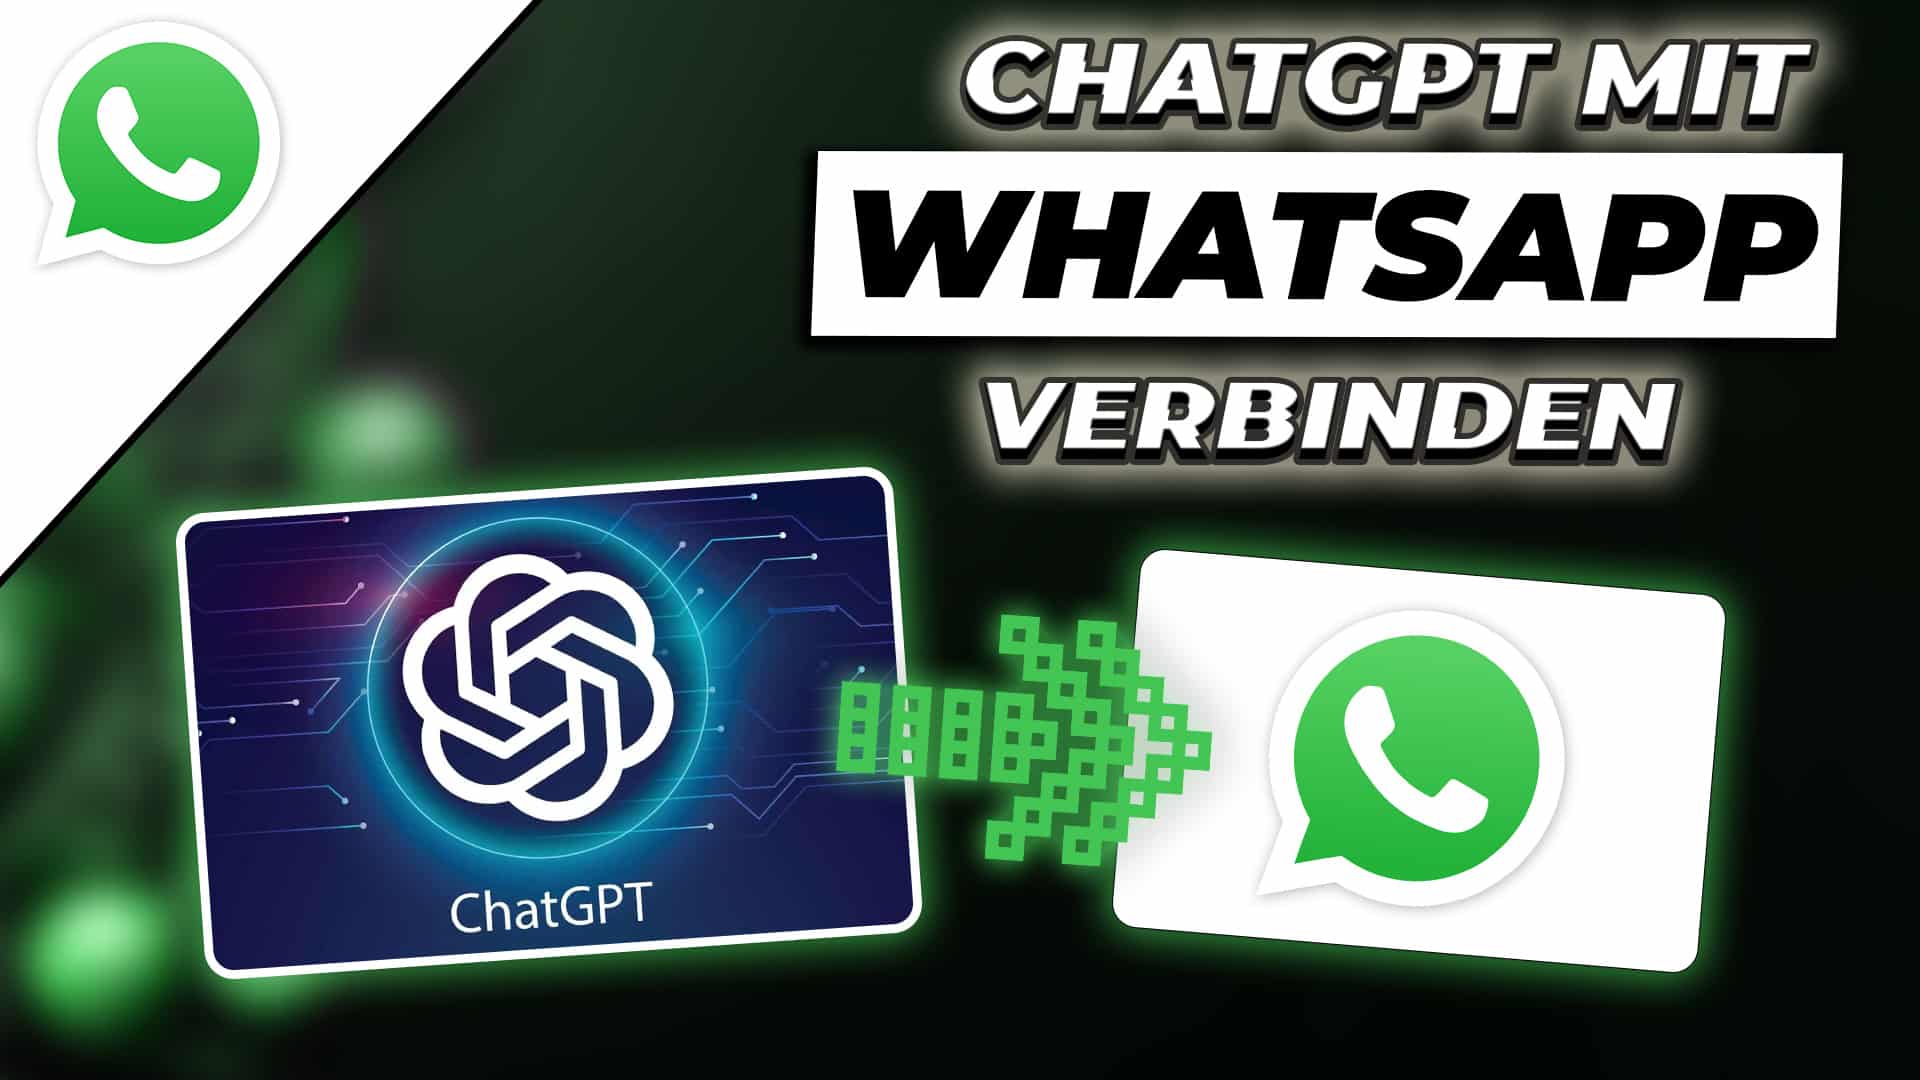 WhatsApp mit ChatGPT verbinden – Der KI Chatbot